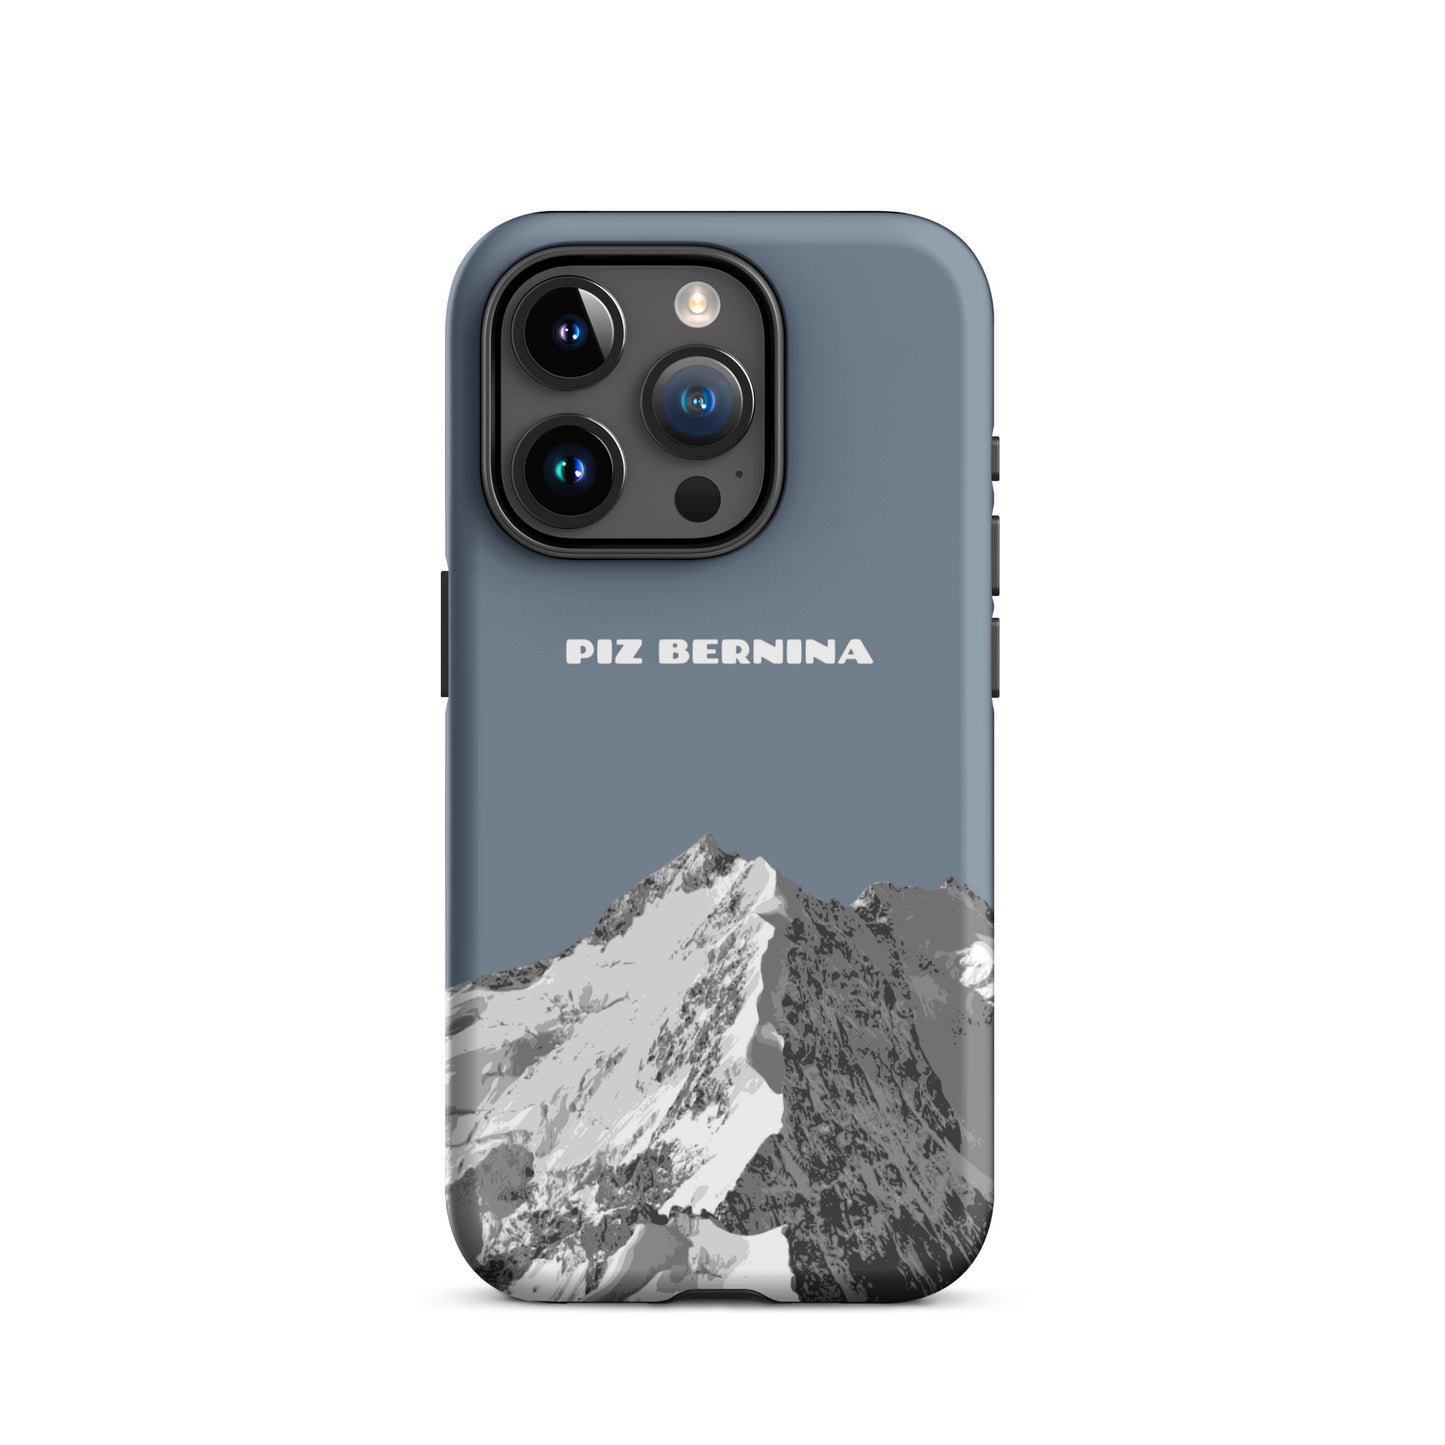 Hülle für das iPhone 15 Pro von Apple in der Farbe Schiefergrau, dass den Piz Bernina in Graubünden zeigt.